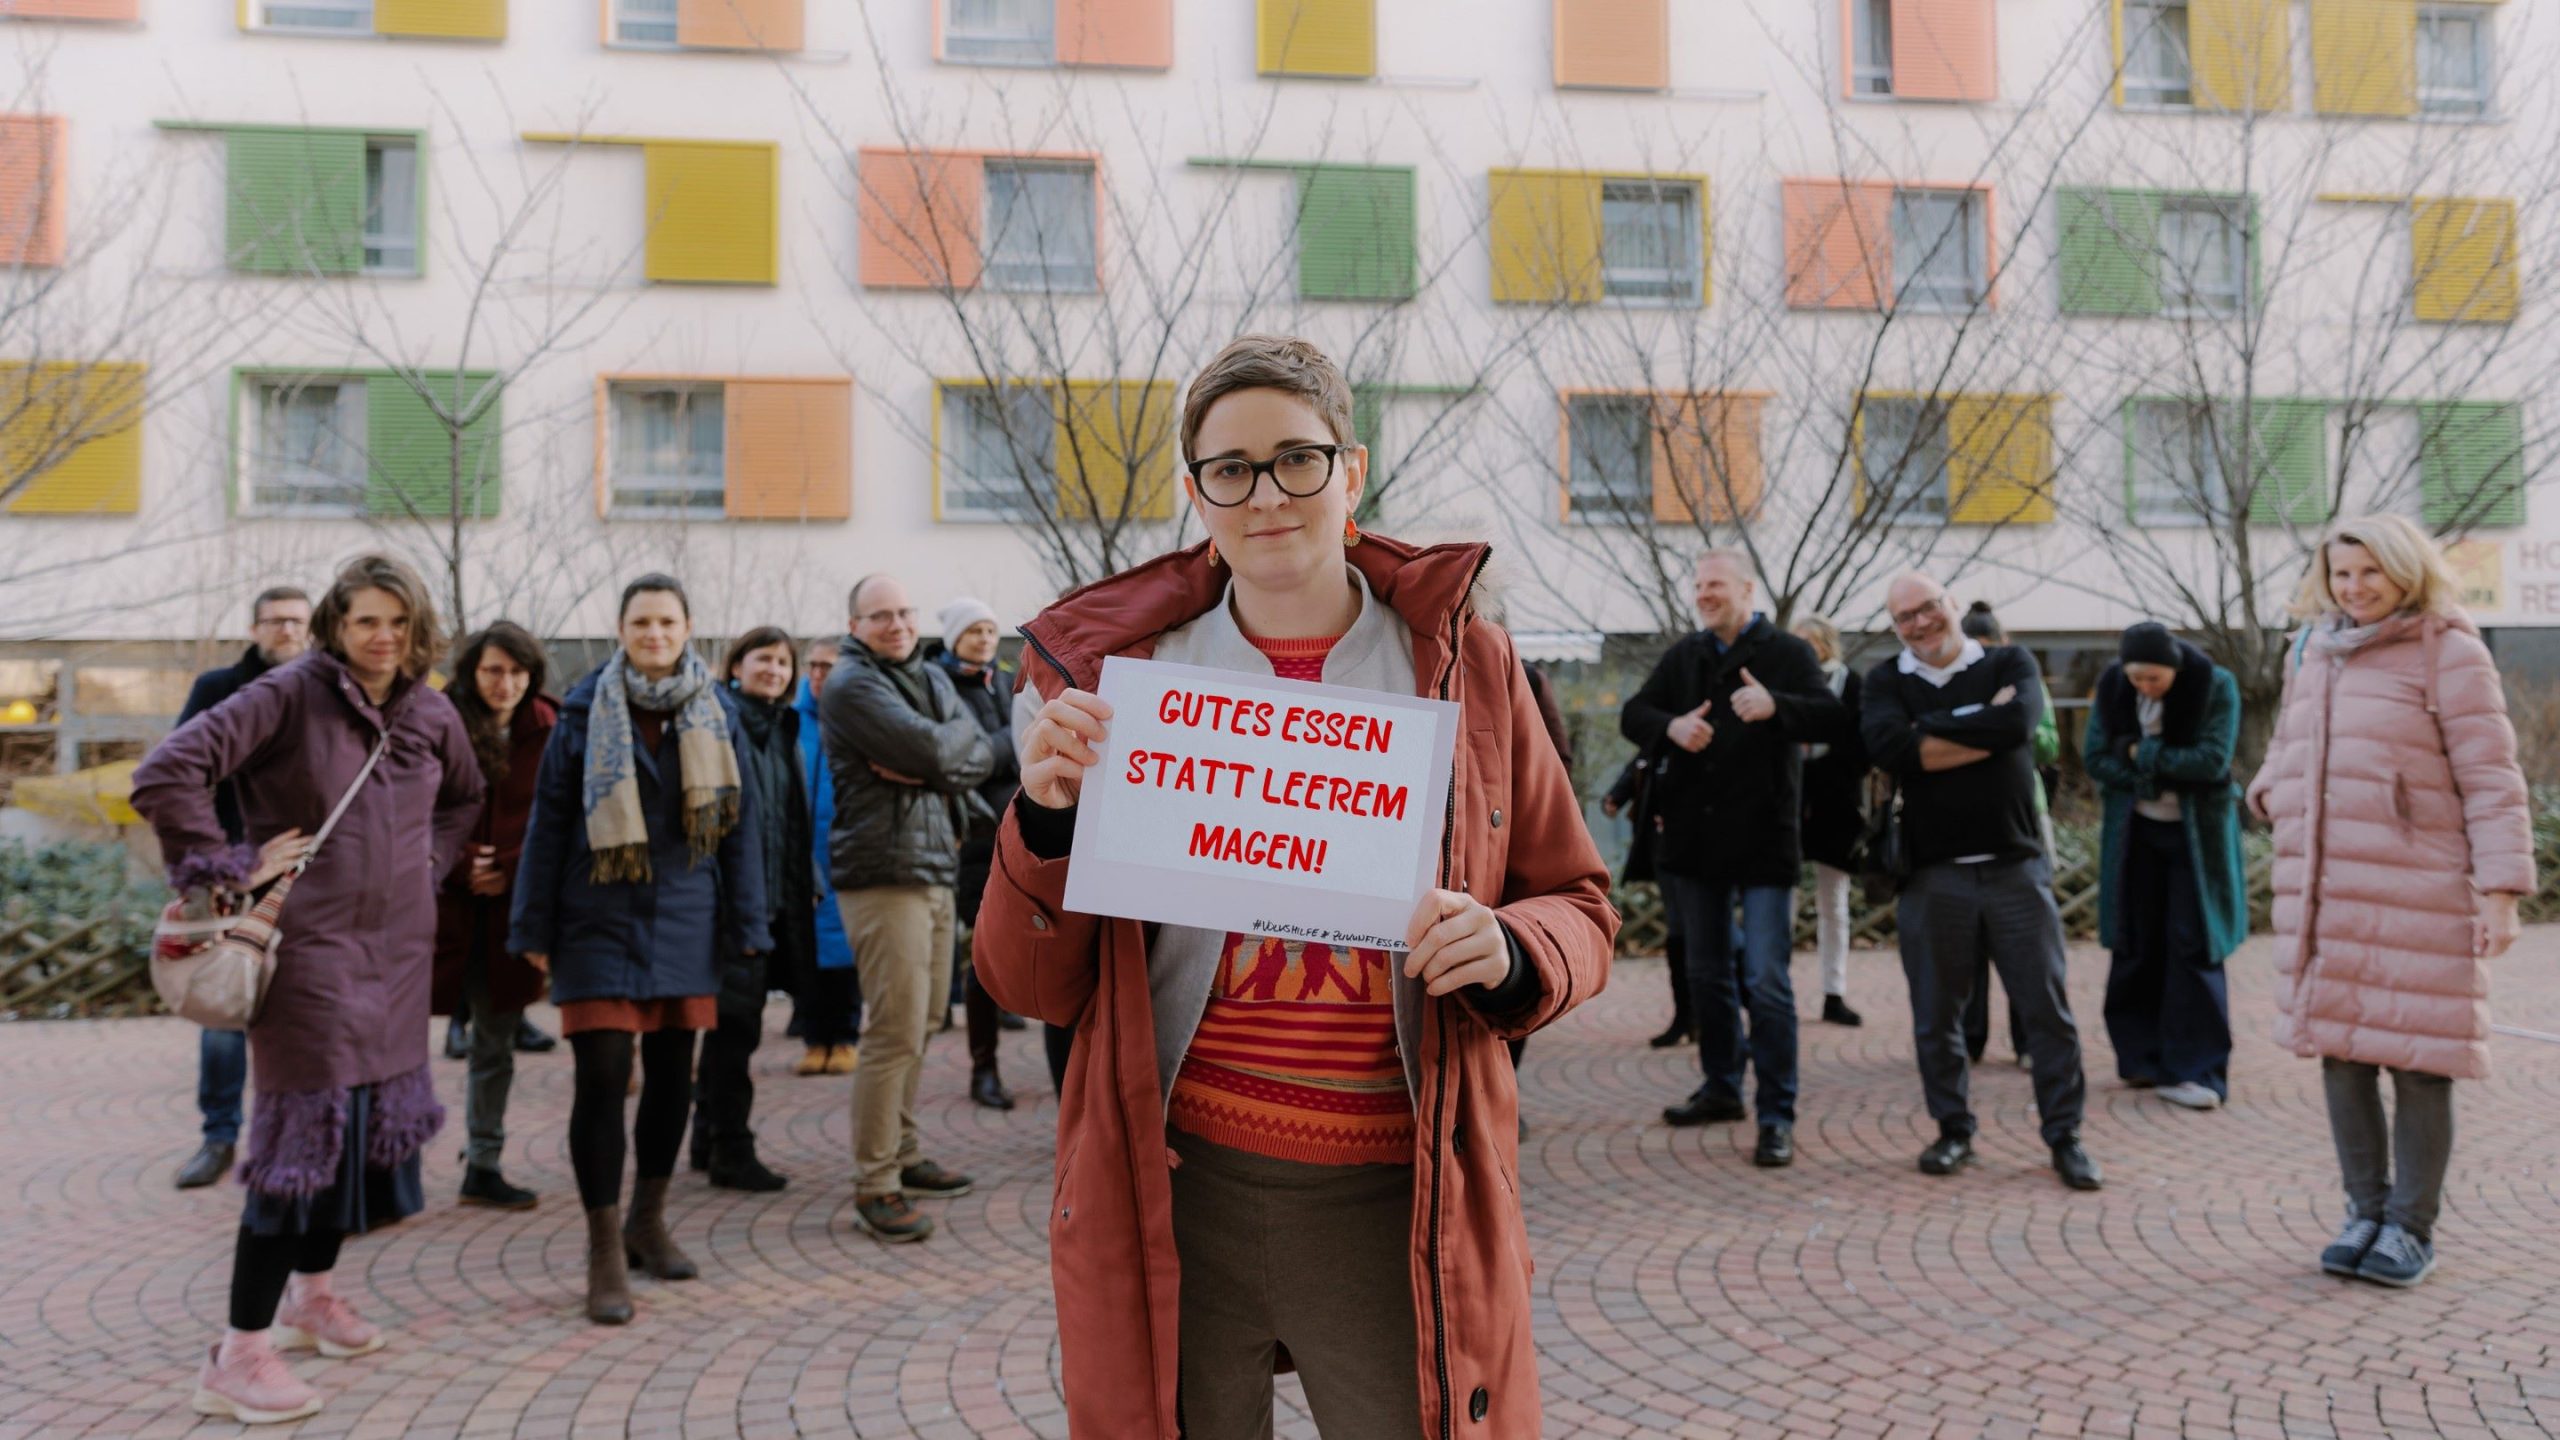 ZUKUNFT ESSEN Obfrau Anna Strobach mit Schild "Gutes Essen statt leerem Magen", im Hintergrund Stakeholder